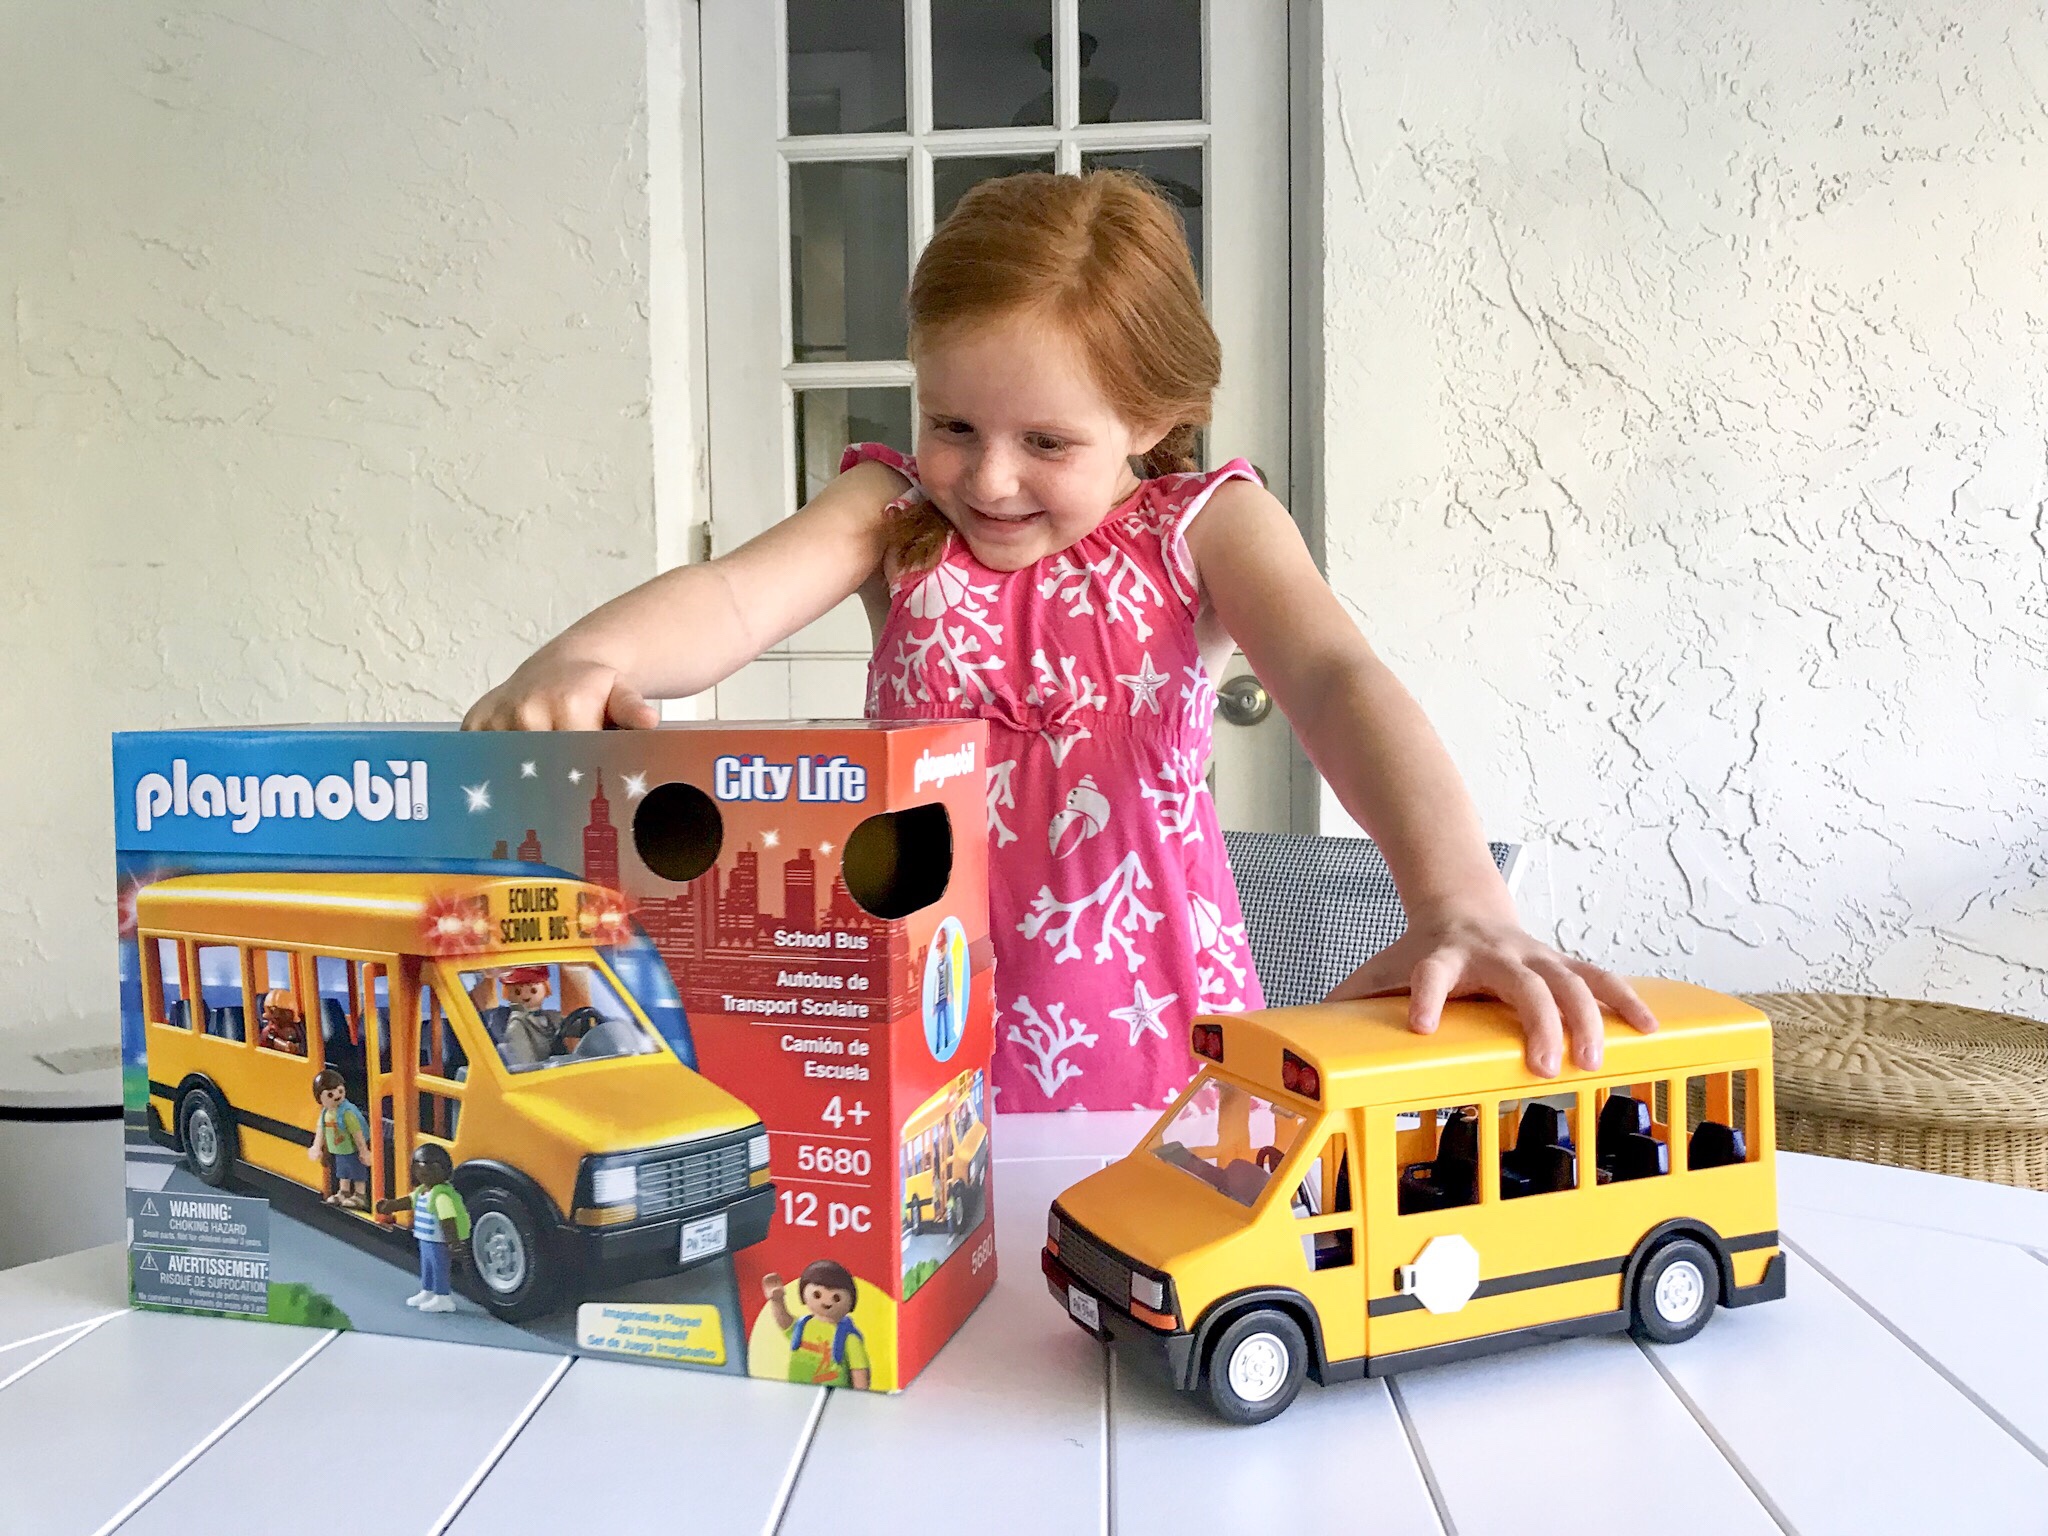 PLAYMOBIL School Bus, Playmobil school, playmobil school bus, playmobil school set, playmobil take along school